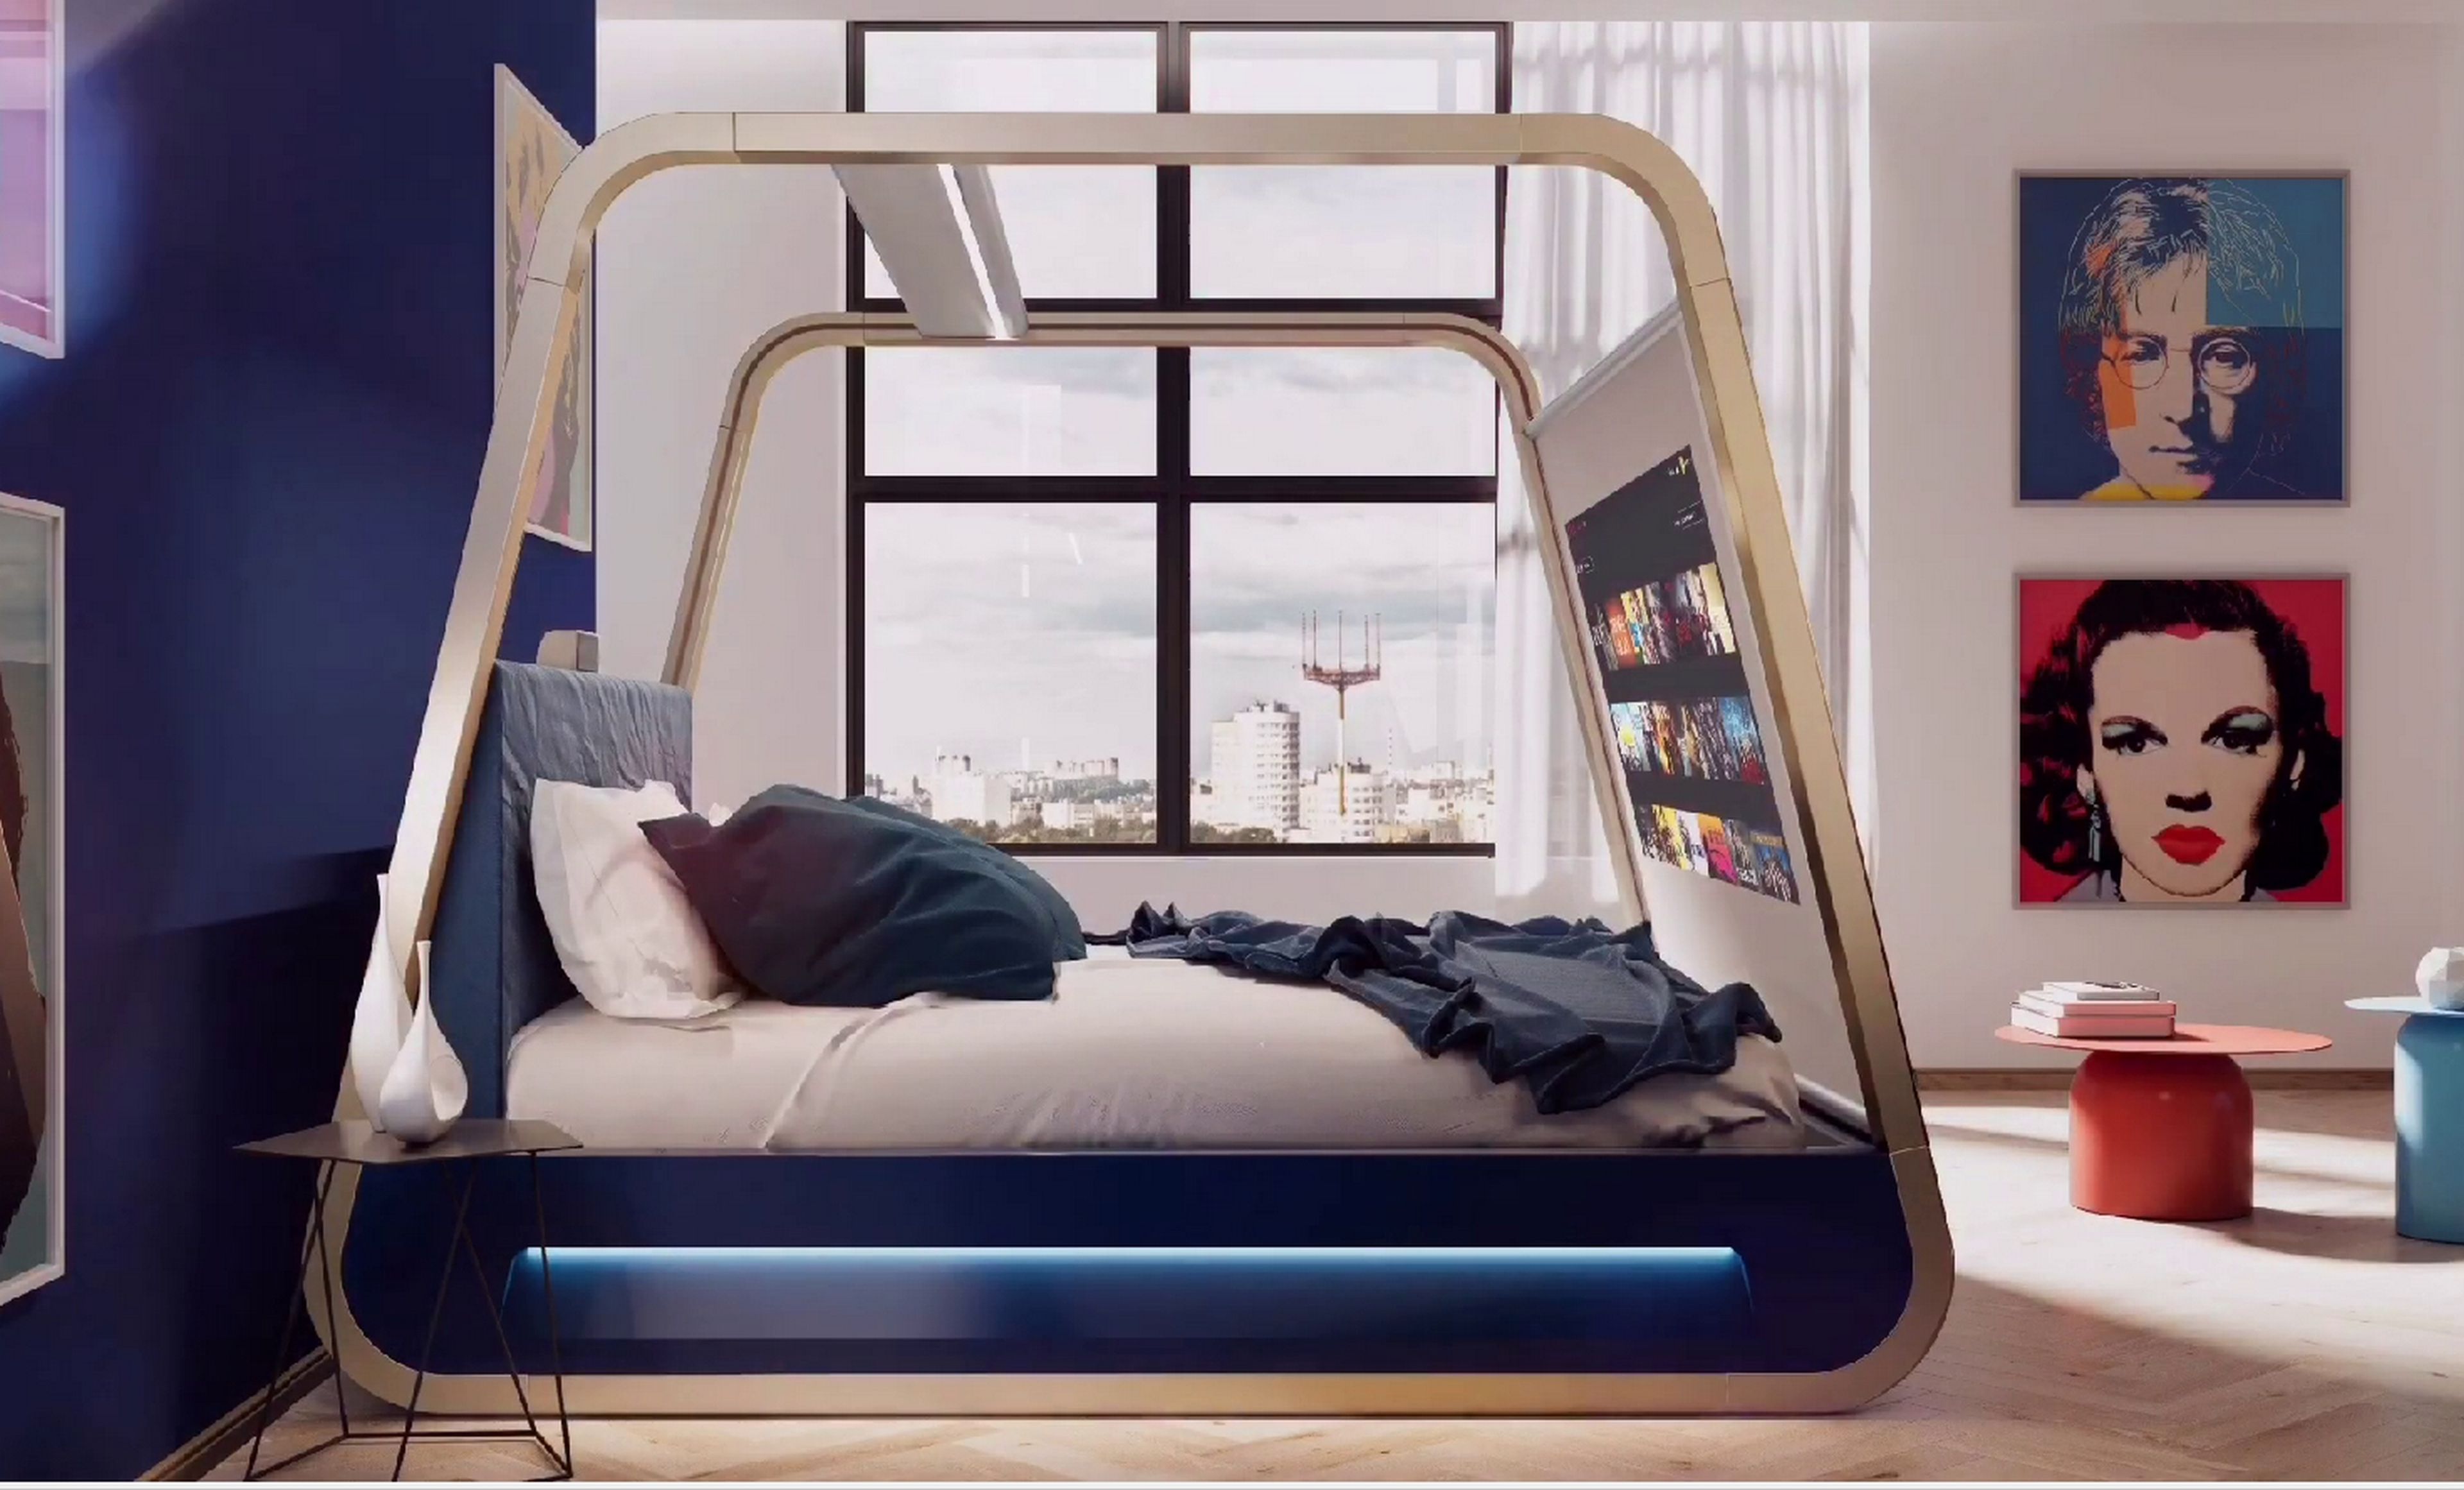 Posicionar Moretón Pedagogía HiCan, la cama que se transforma en sala de cine con proyector incorporado  | Computer Hoy